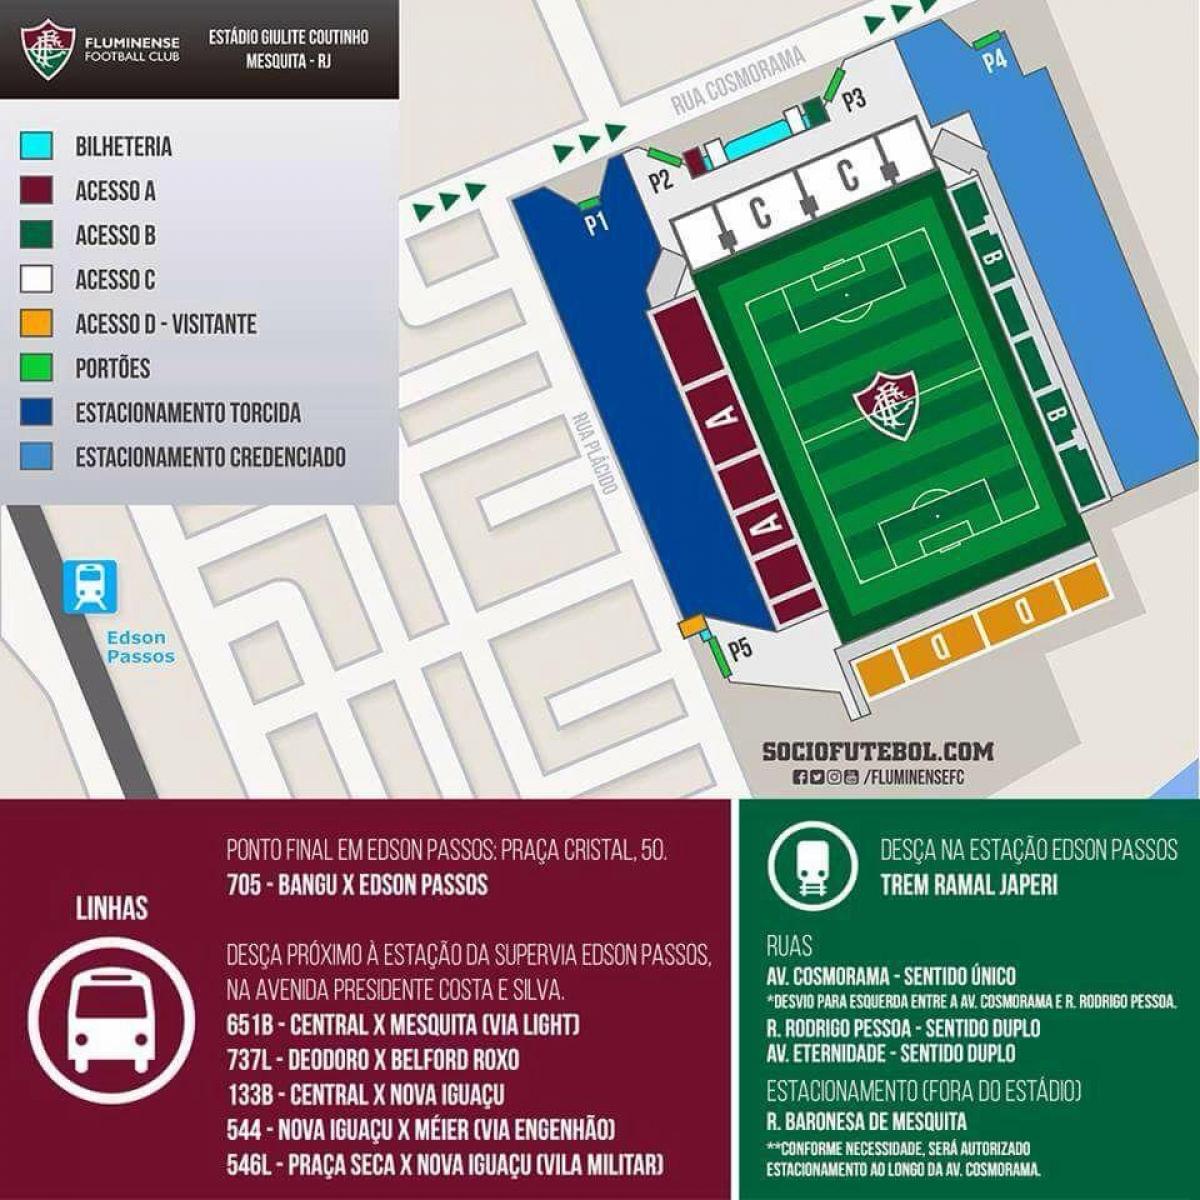 Mapa do estádio Giulite Coutinho